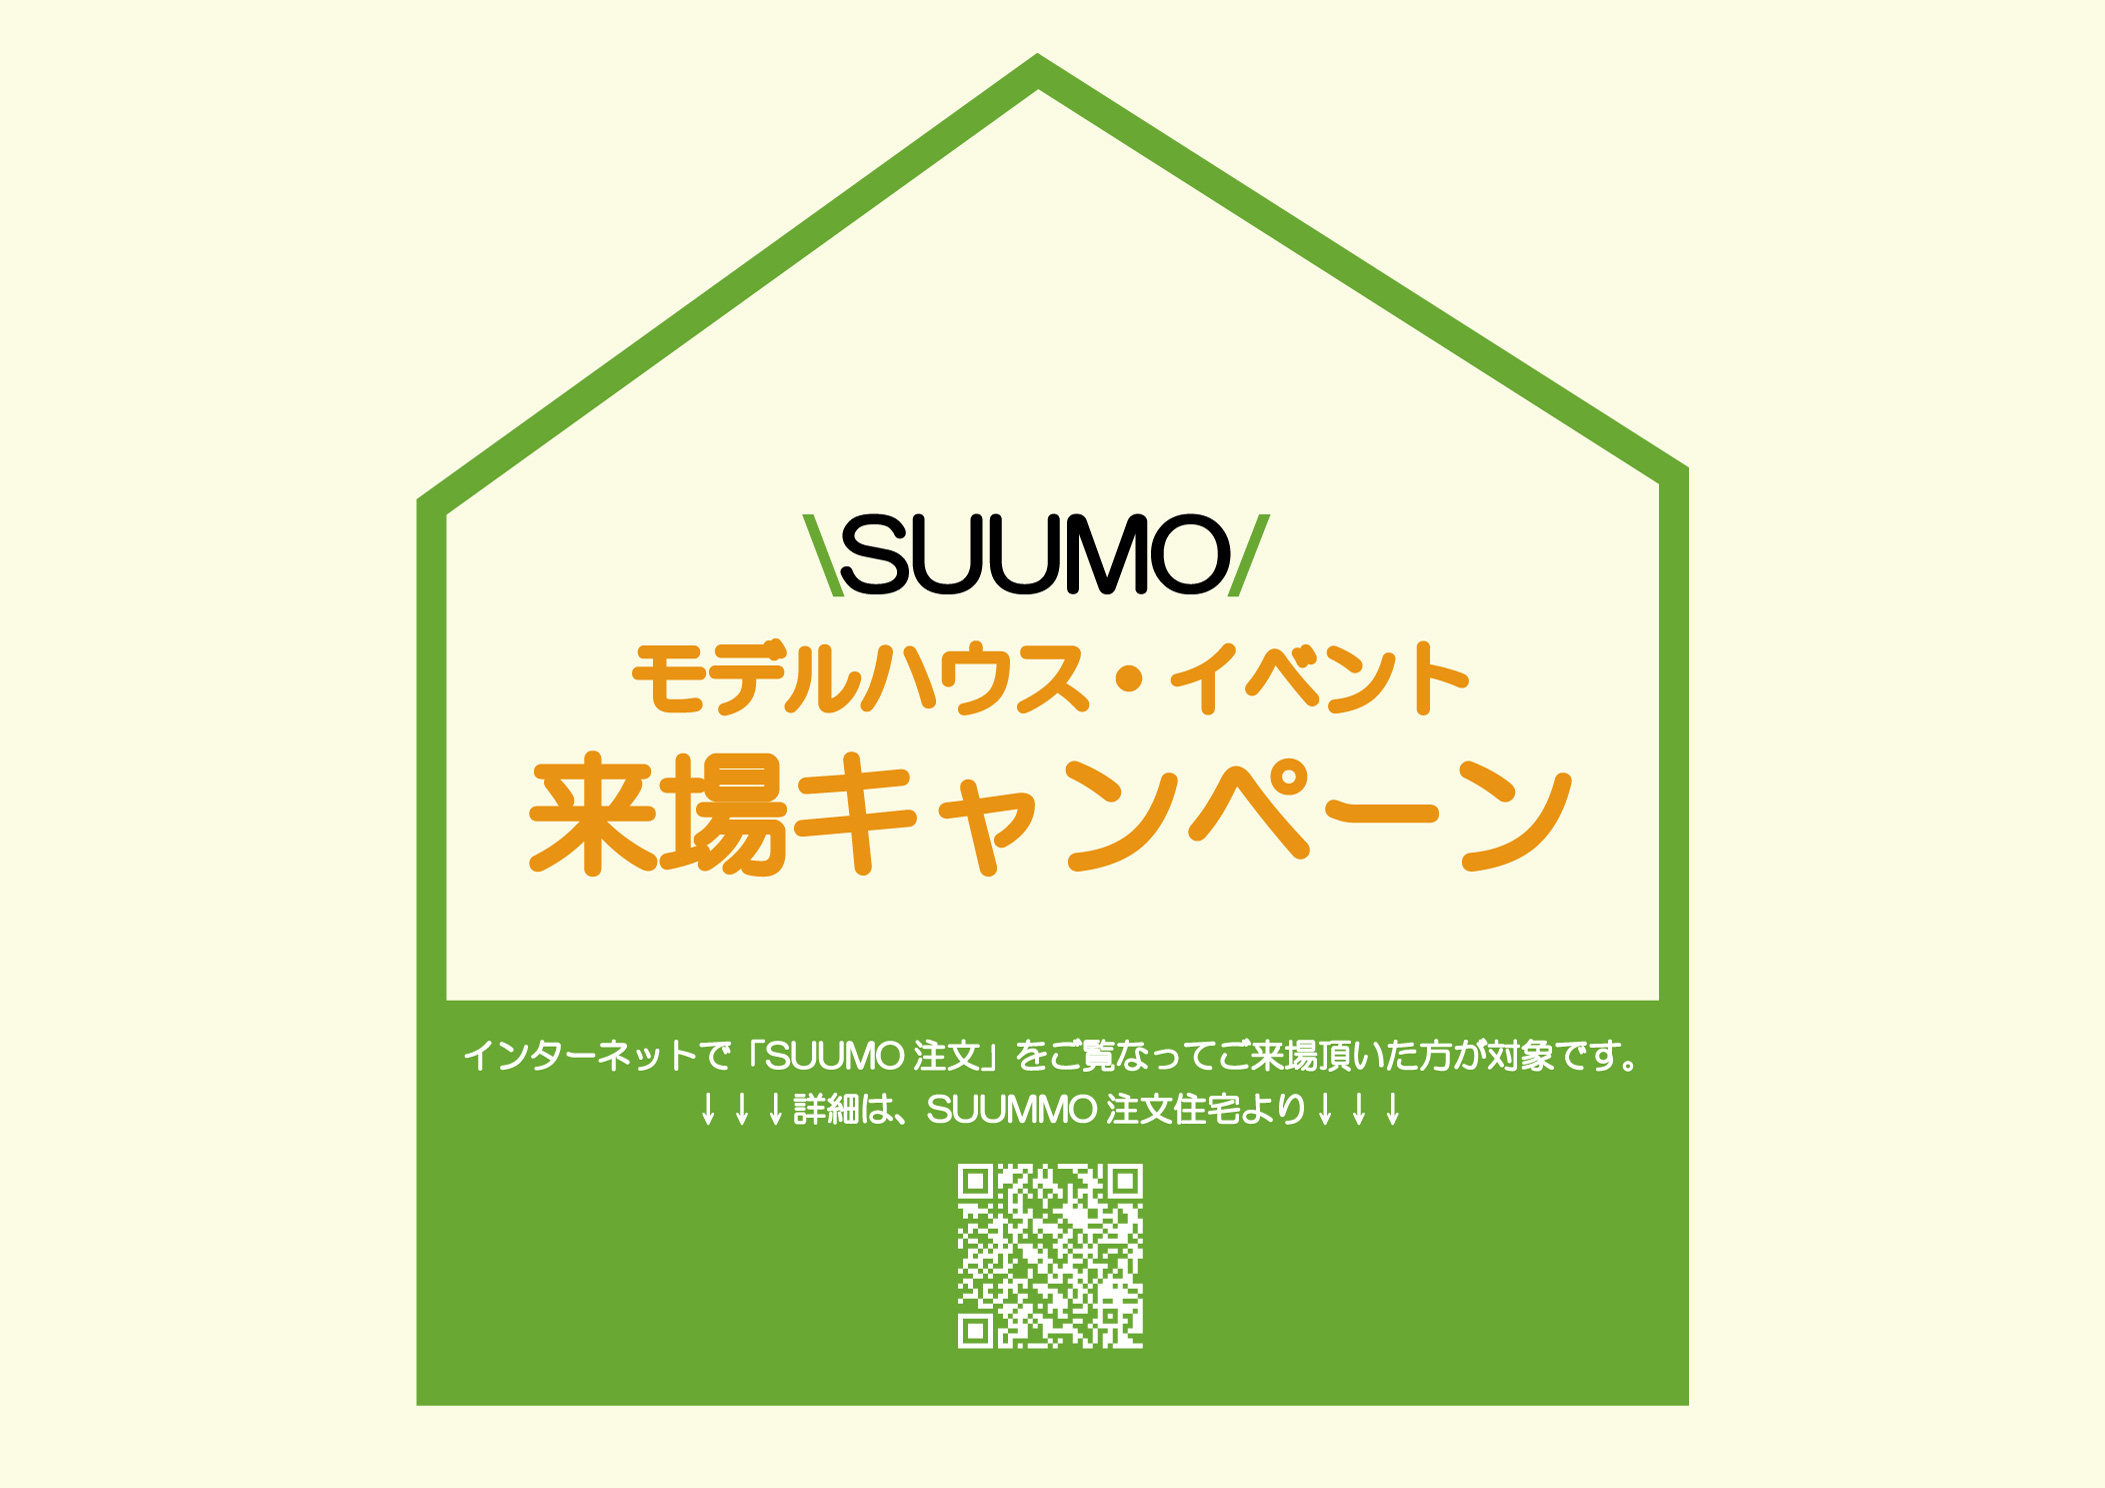 SUUMO 来場キャンペーン START!